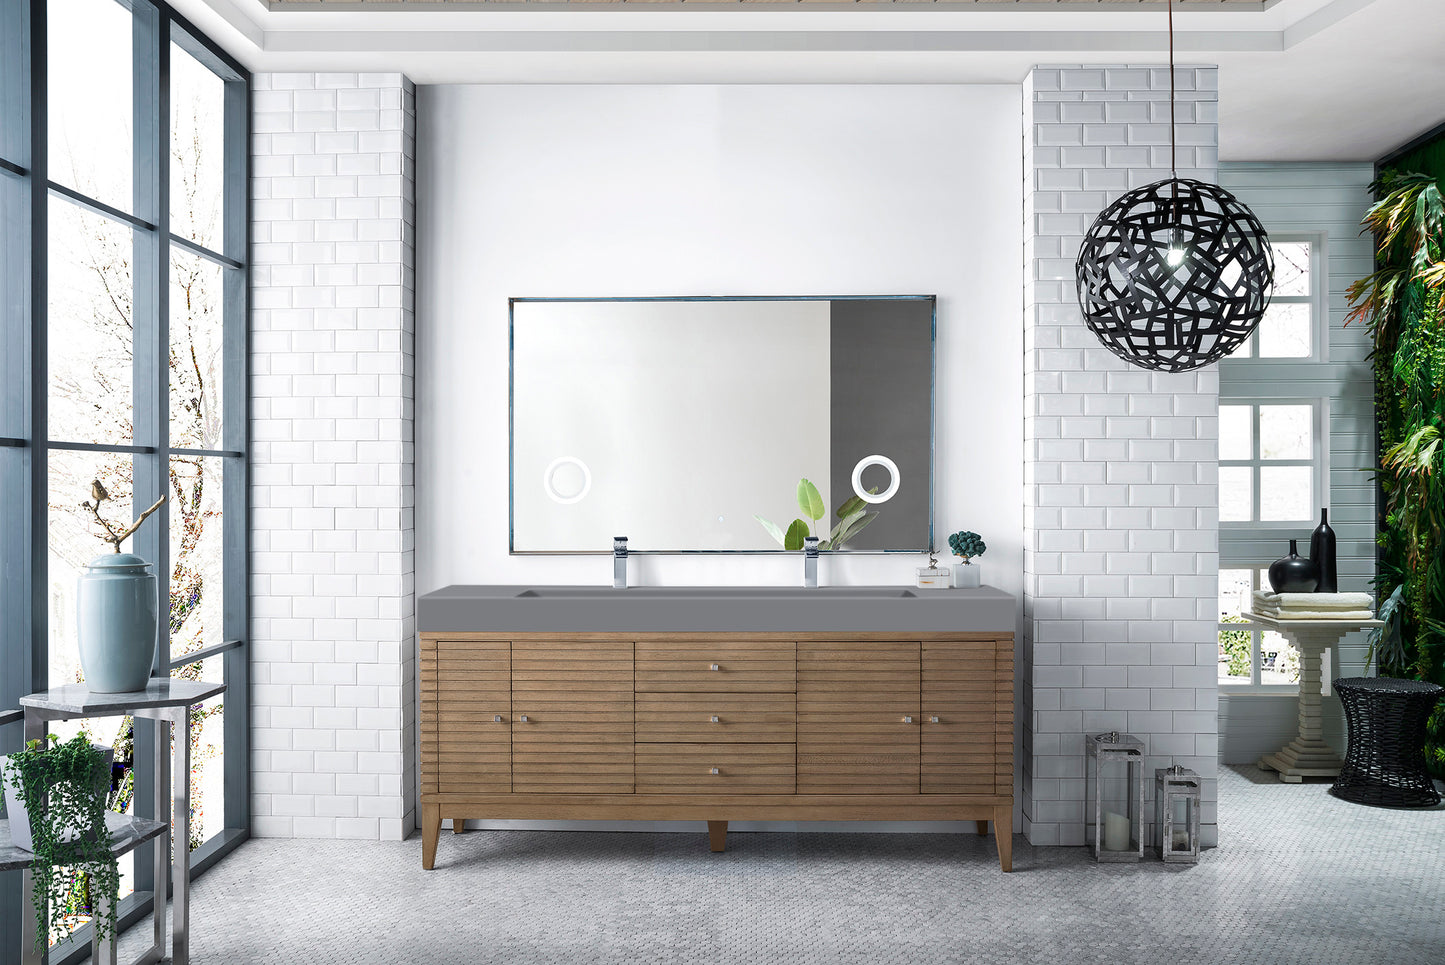 James Martin Linear 72" Double Vanity with Composite Top - Luxe Bathroom Vanities